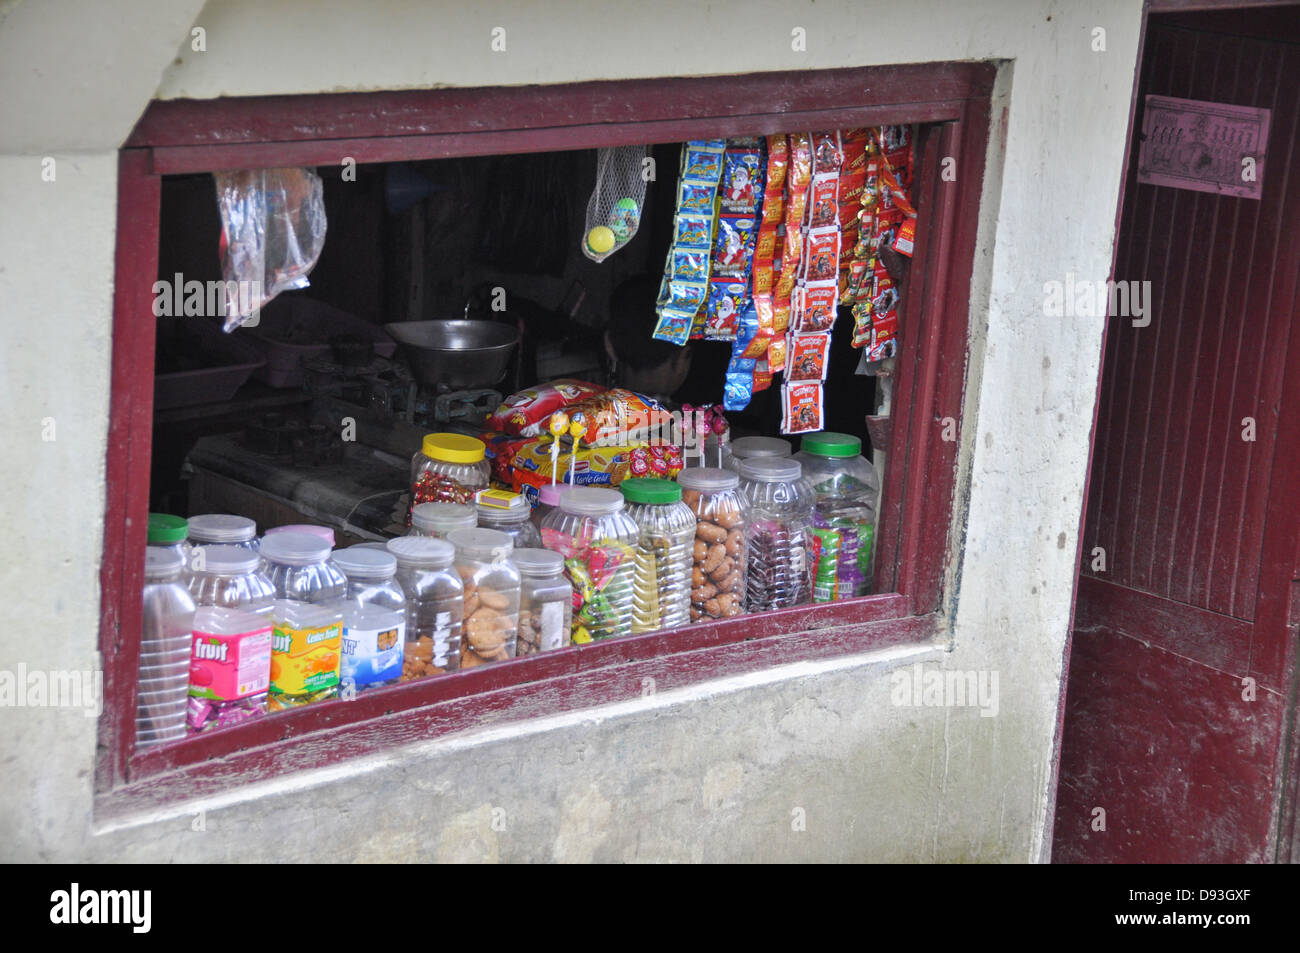 Darjeeling, West Bengal, Grocery store Stock Photo